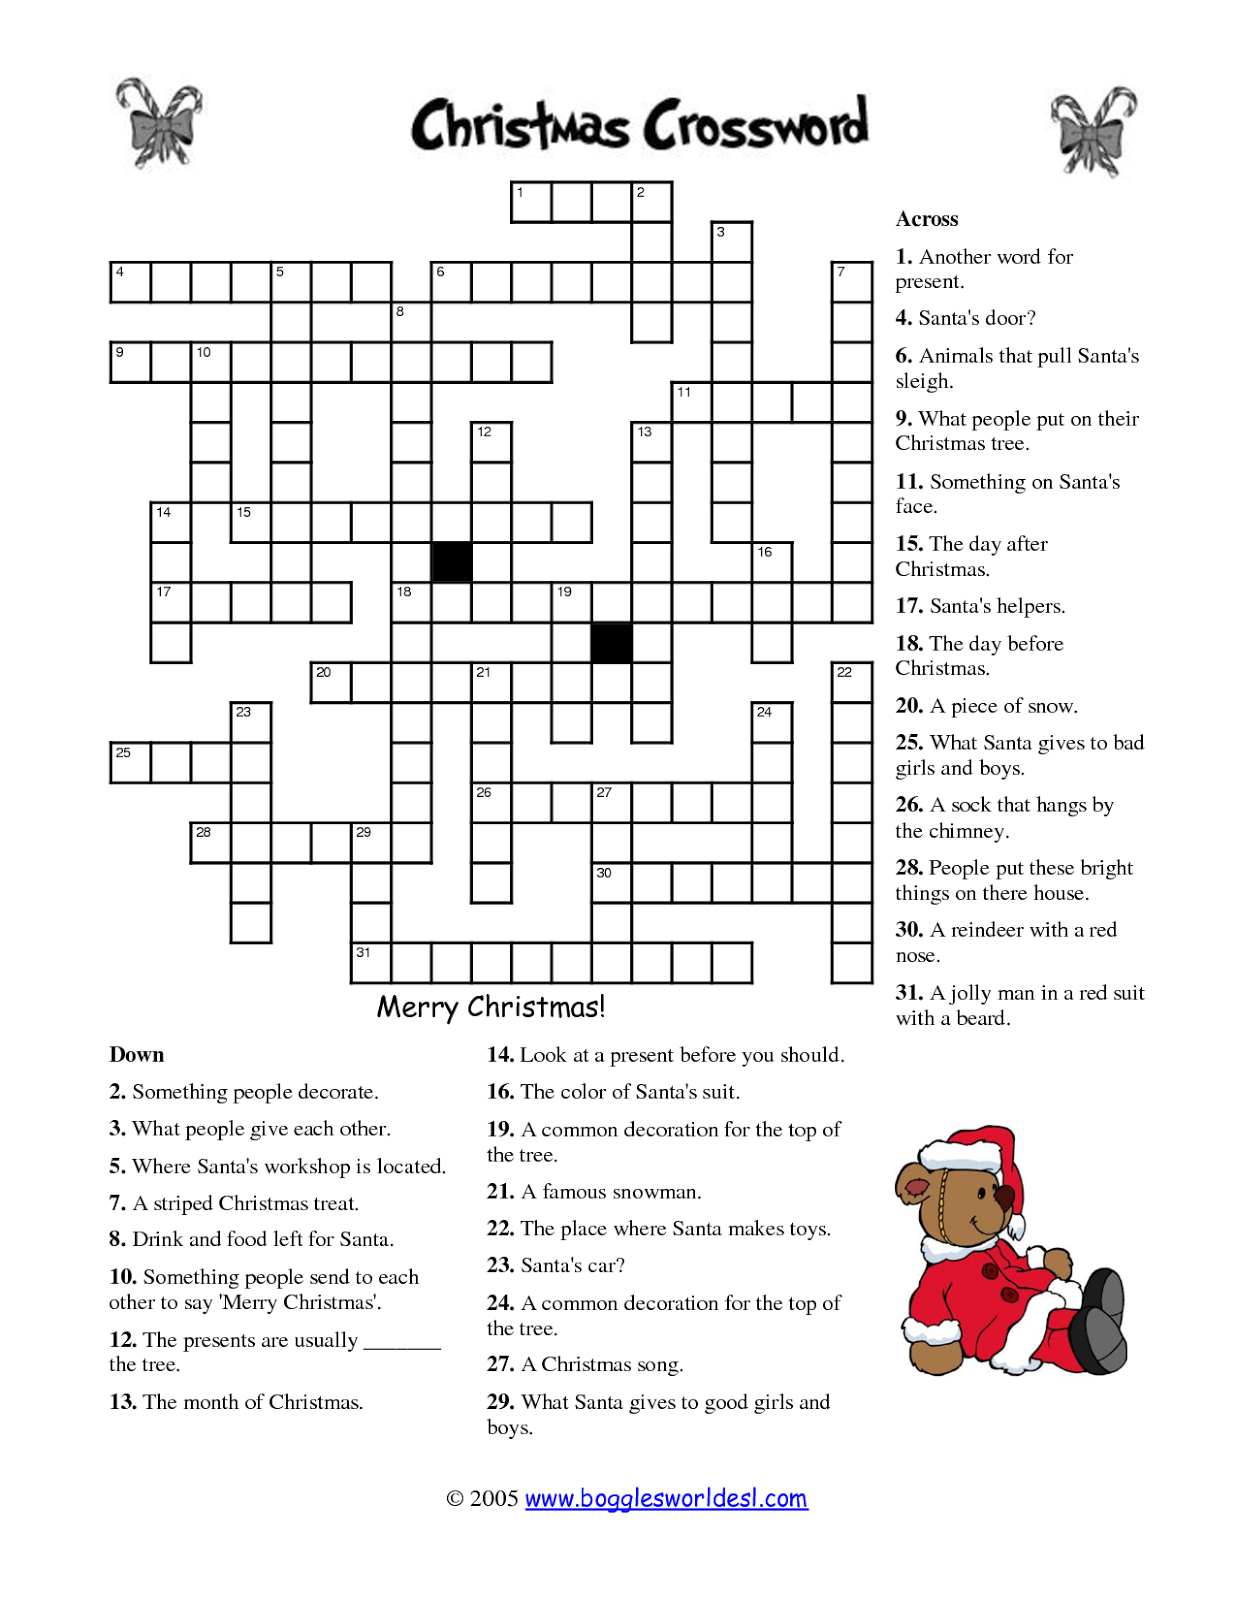 Free Printable Crossword Puzzles | M34 | Free Printable Crossword - Free Printable Christmas Picture Puzzles